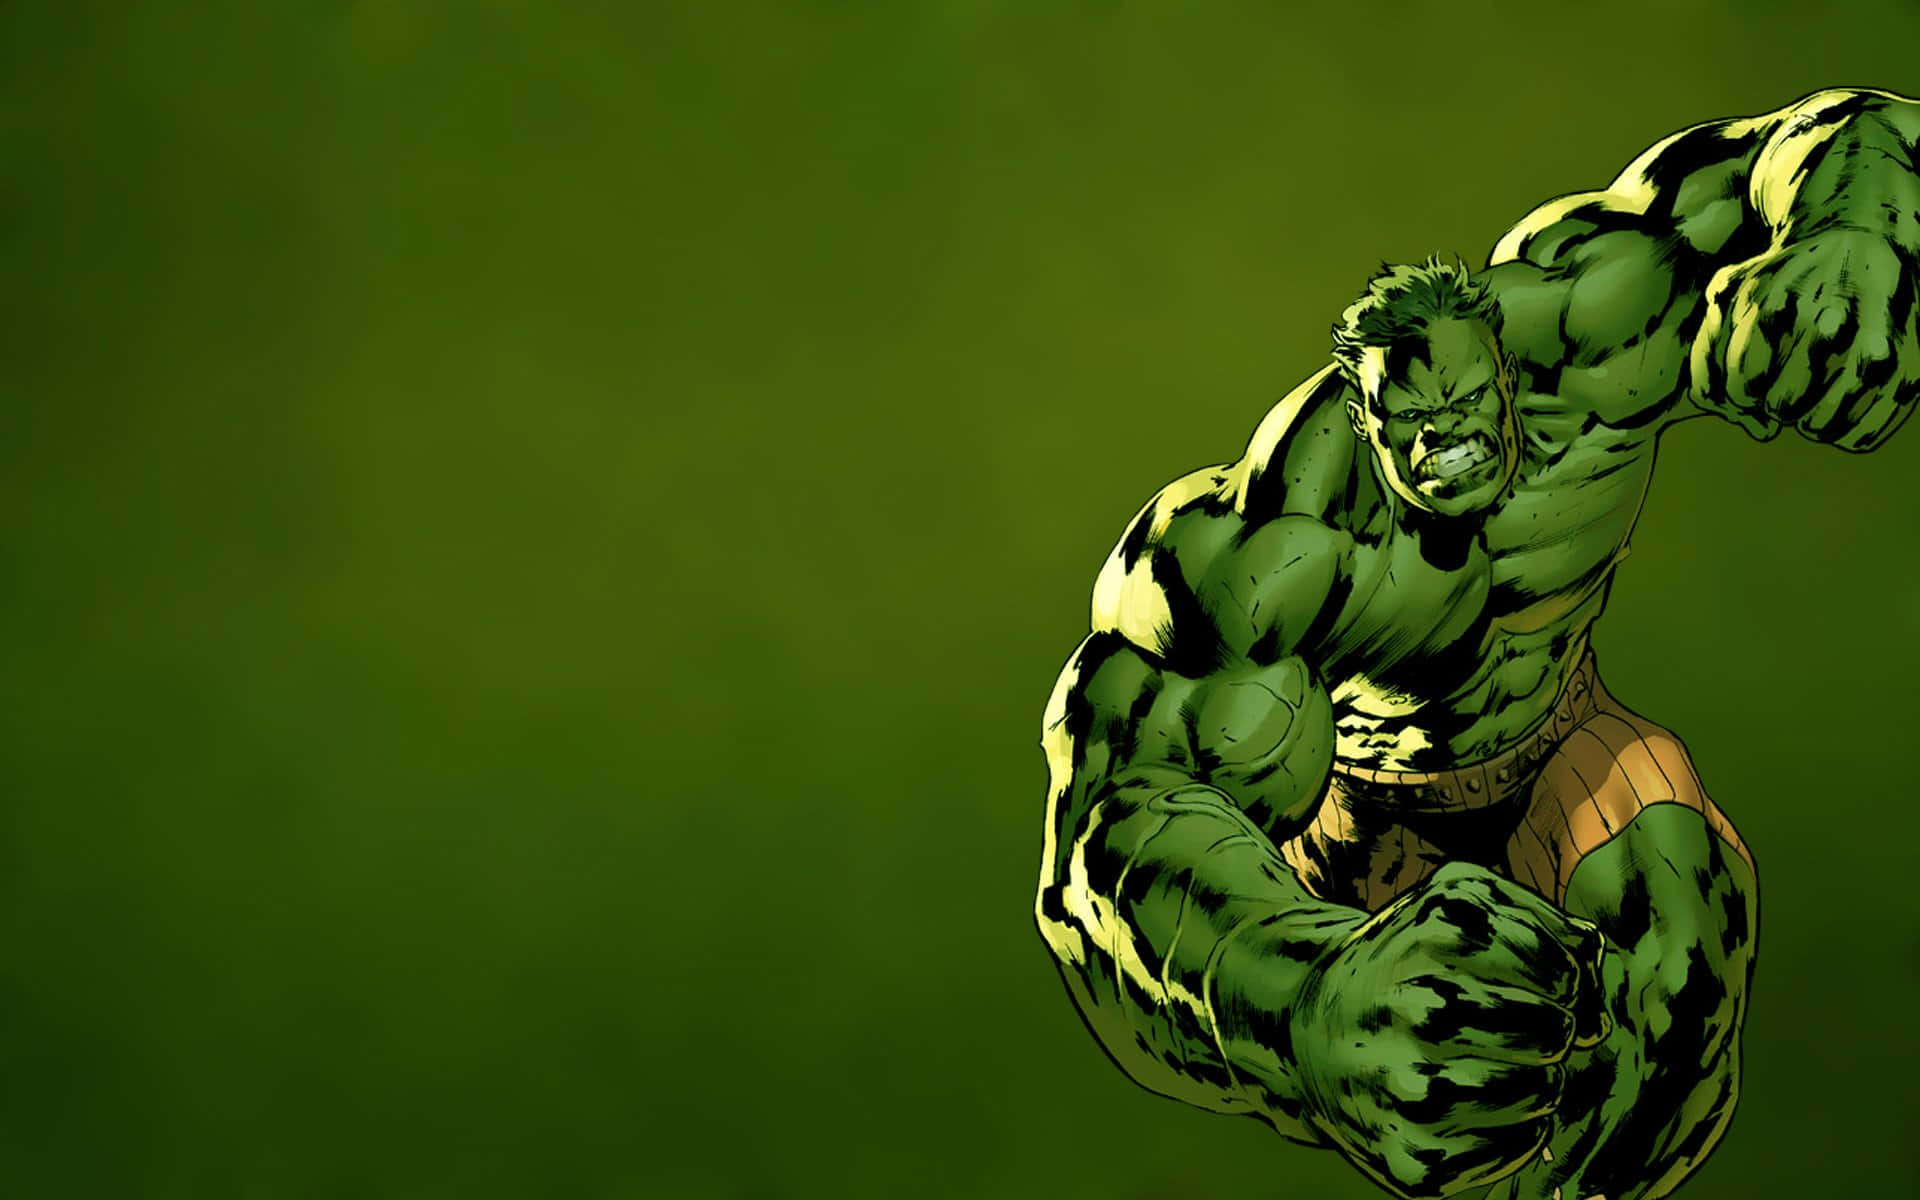 Derunglaubliche Hulk, Bereit Seine Wut Zu Entfesseln.